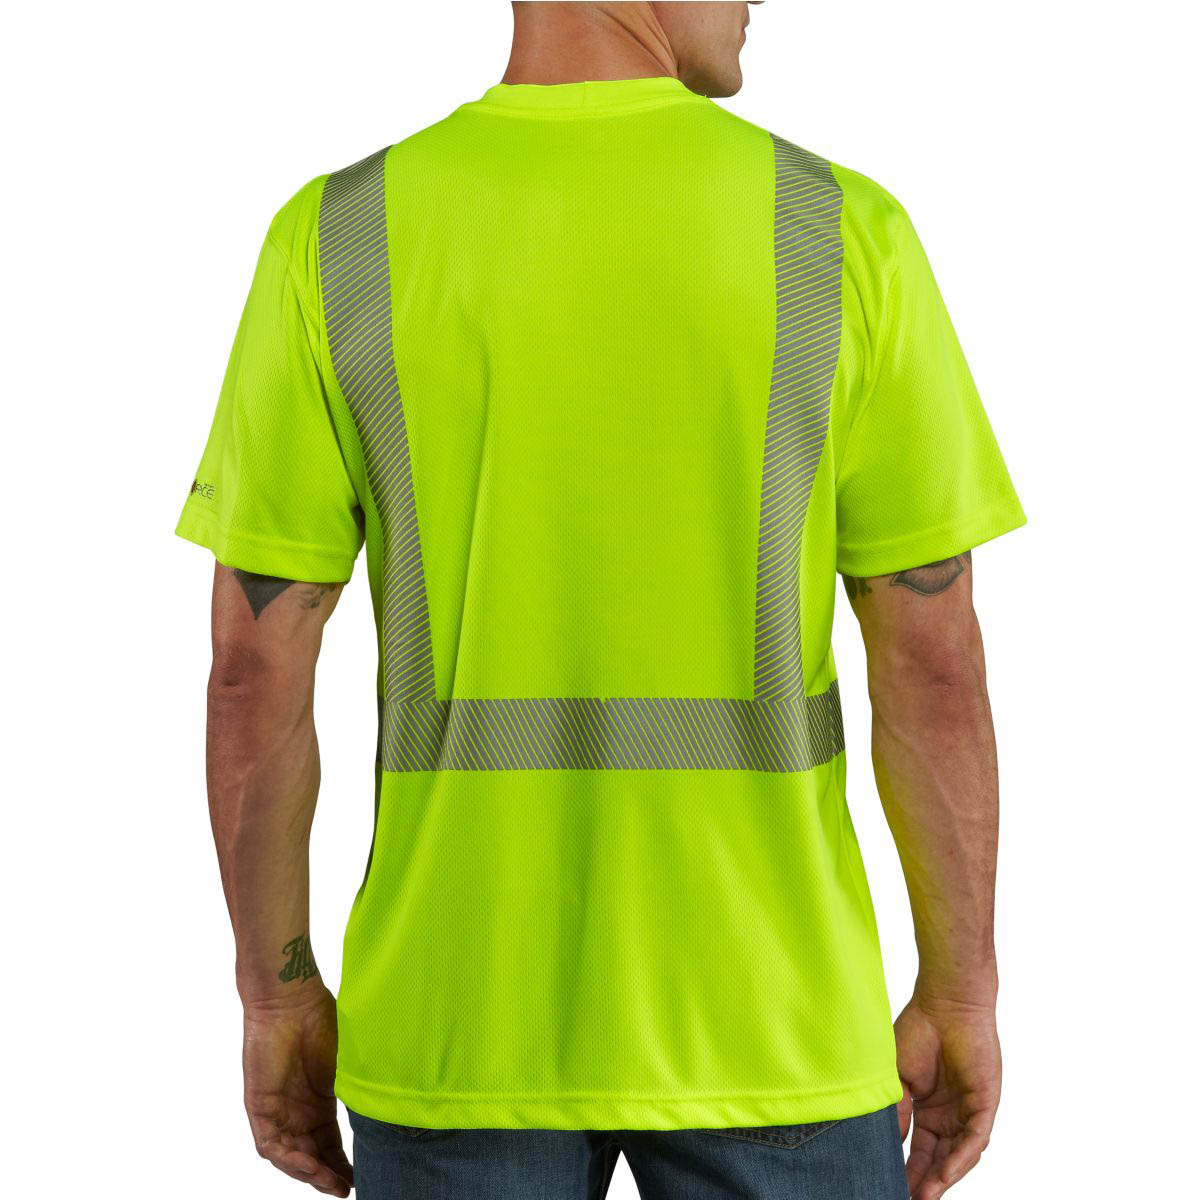 Carhartt Men's Force High Visibility Short Sleeve Class 2 T Shirt